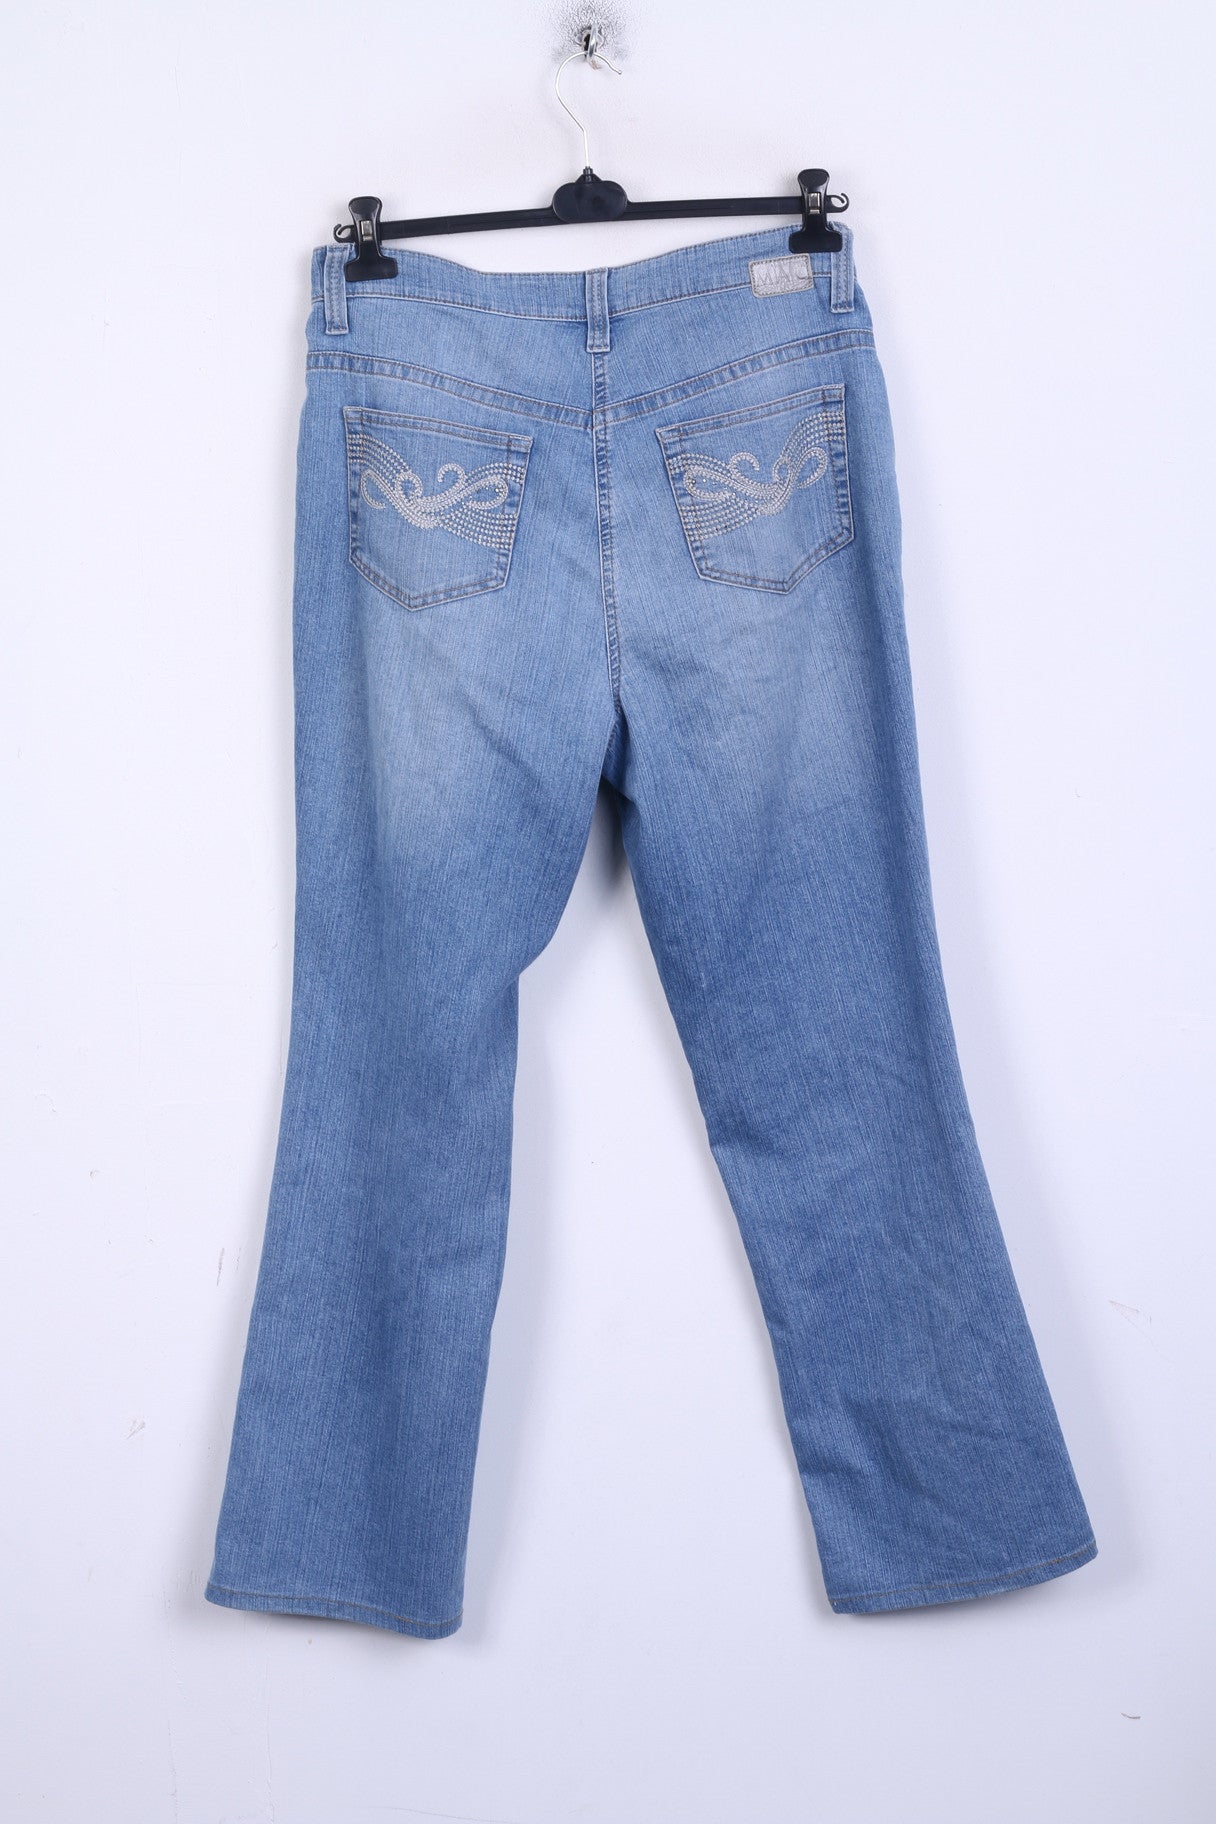 MAC Jeans Womens 46/32 Trousers Denim Jeans Blue Light Wash Cotton